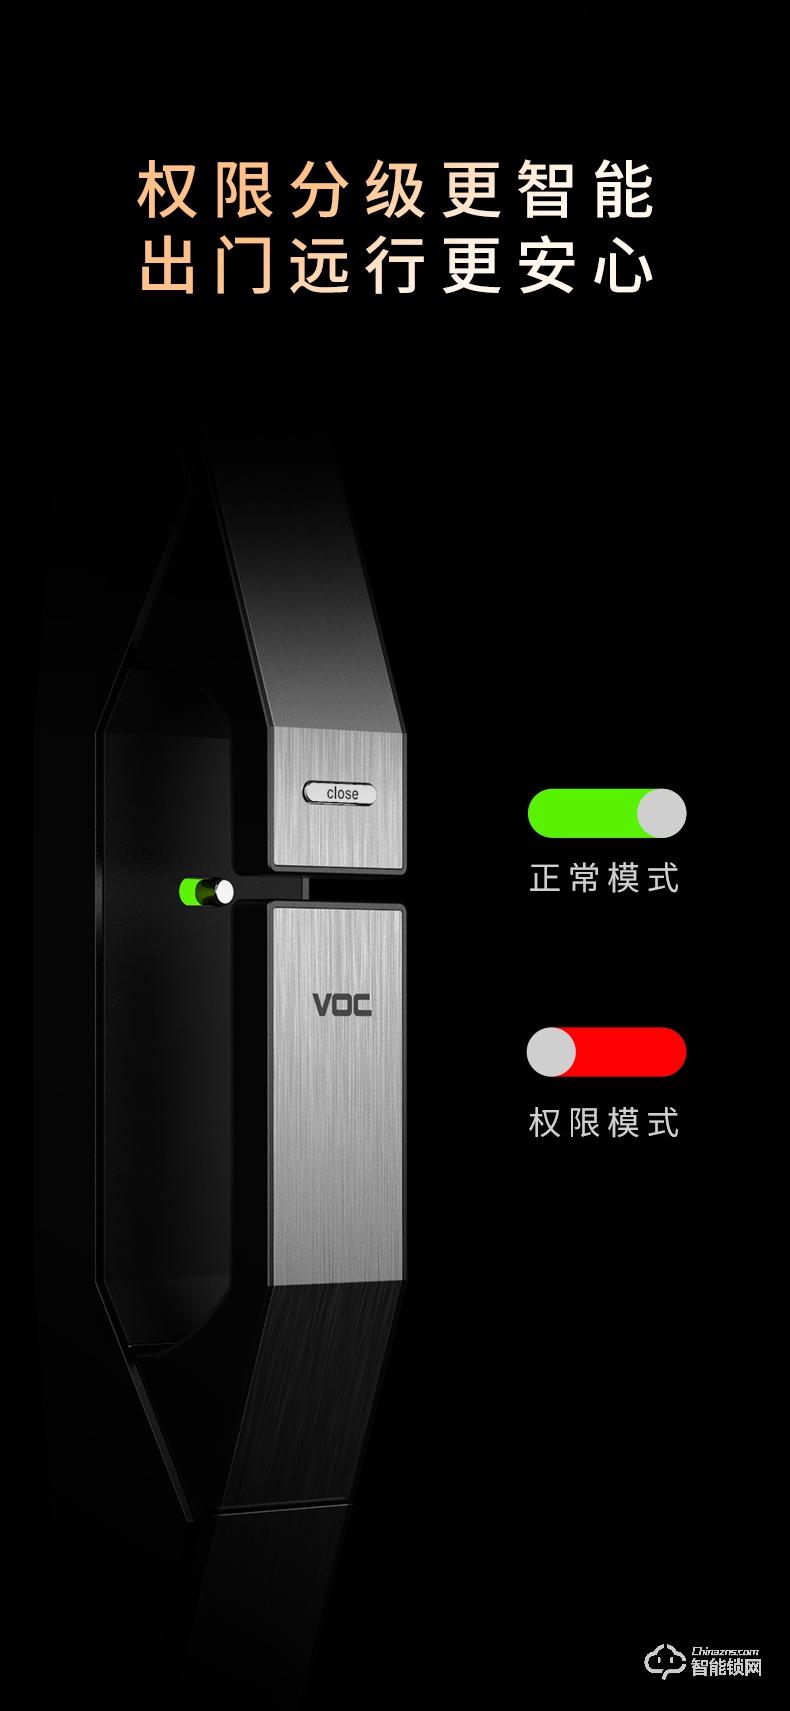 VOC智能锁 T9大门锁磁卡推拉式智能锁